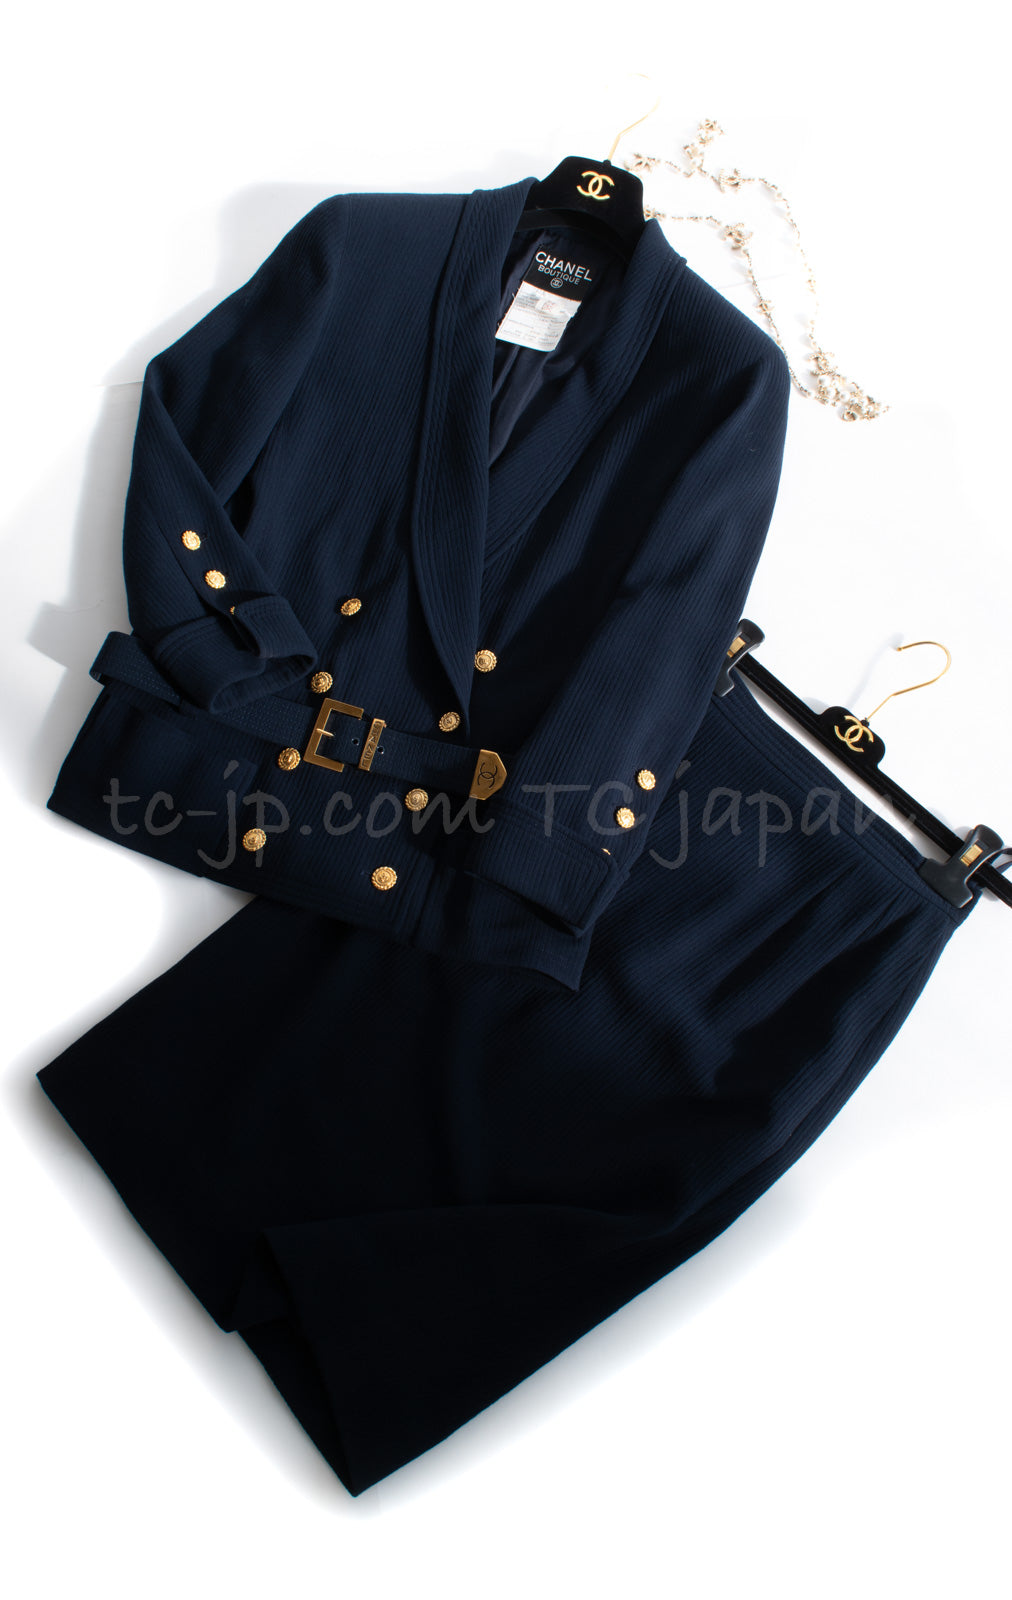 シャネル スーツ CHANEL Suit【正規品・専門店】シャネル 洋服の専門店 